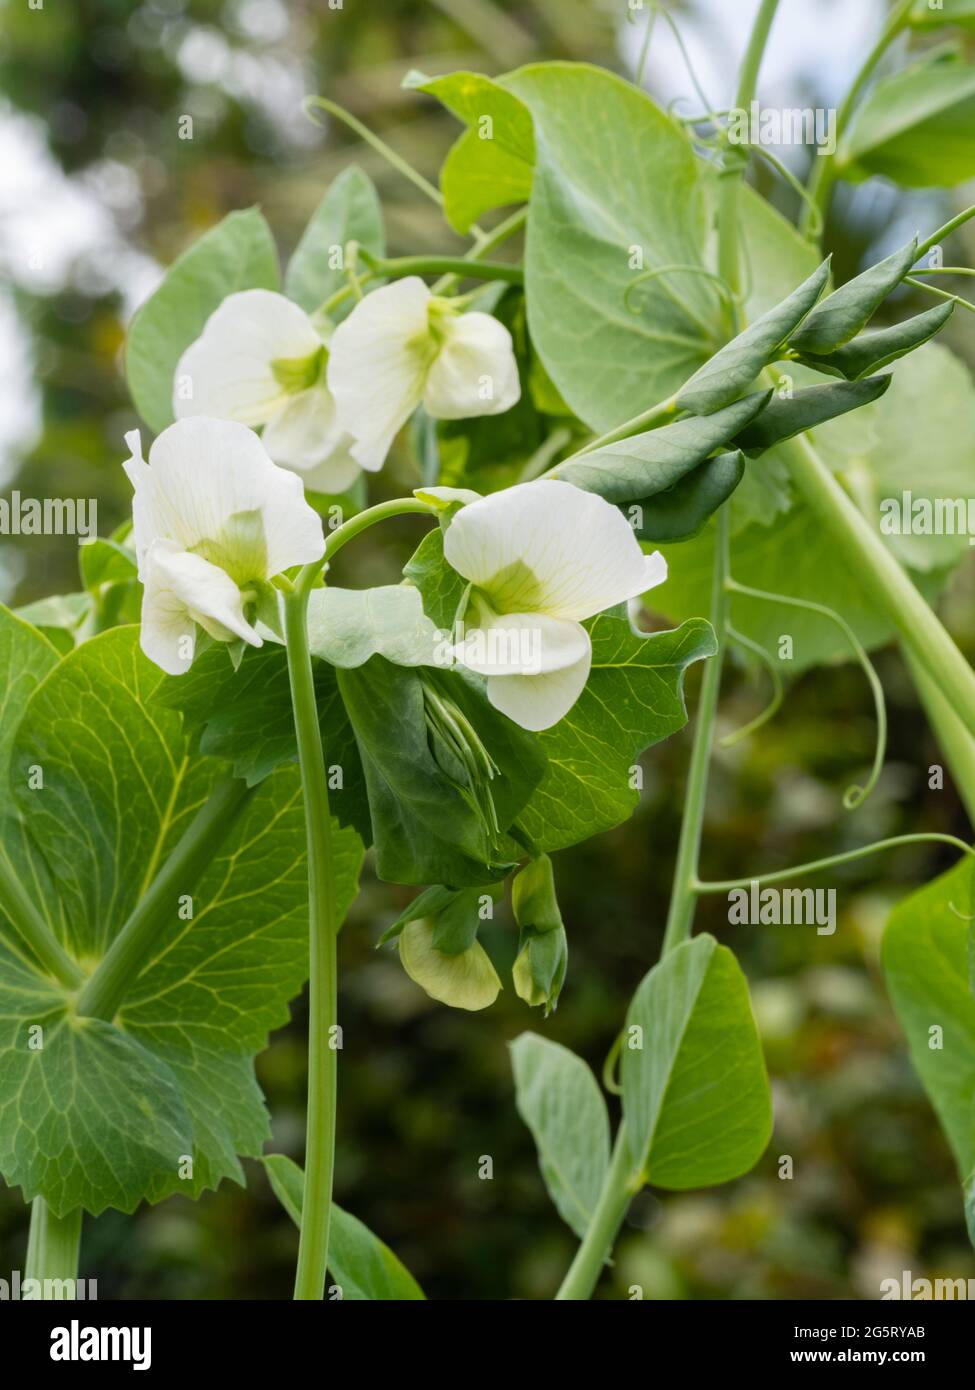 June flowers of the tall climbing garden pea Pisum sativum 'Alderman' Stock Photo